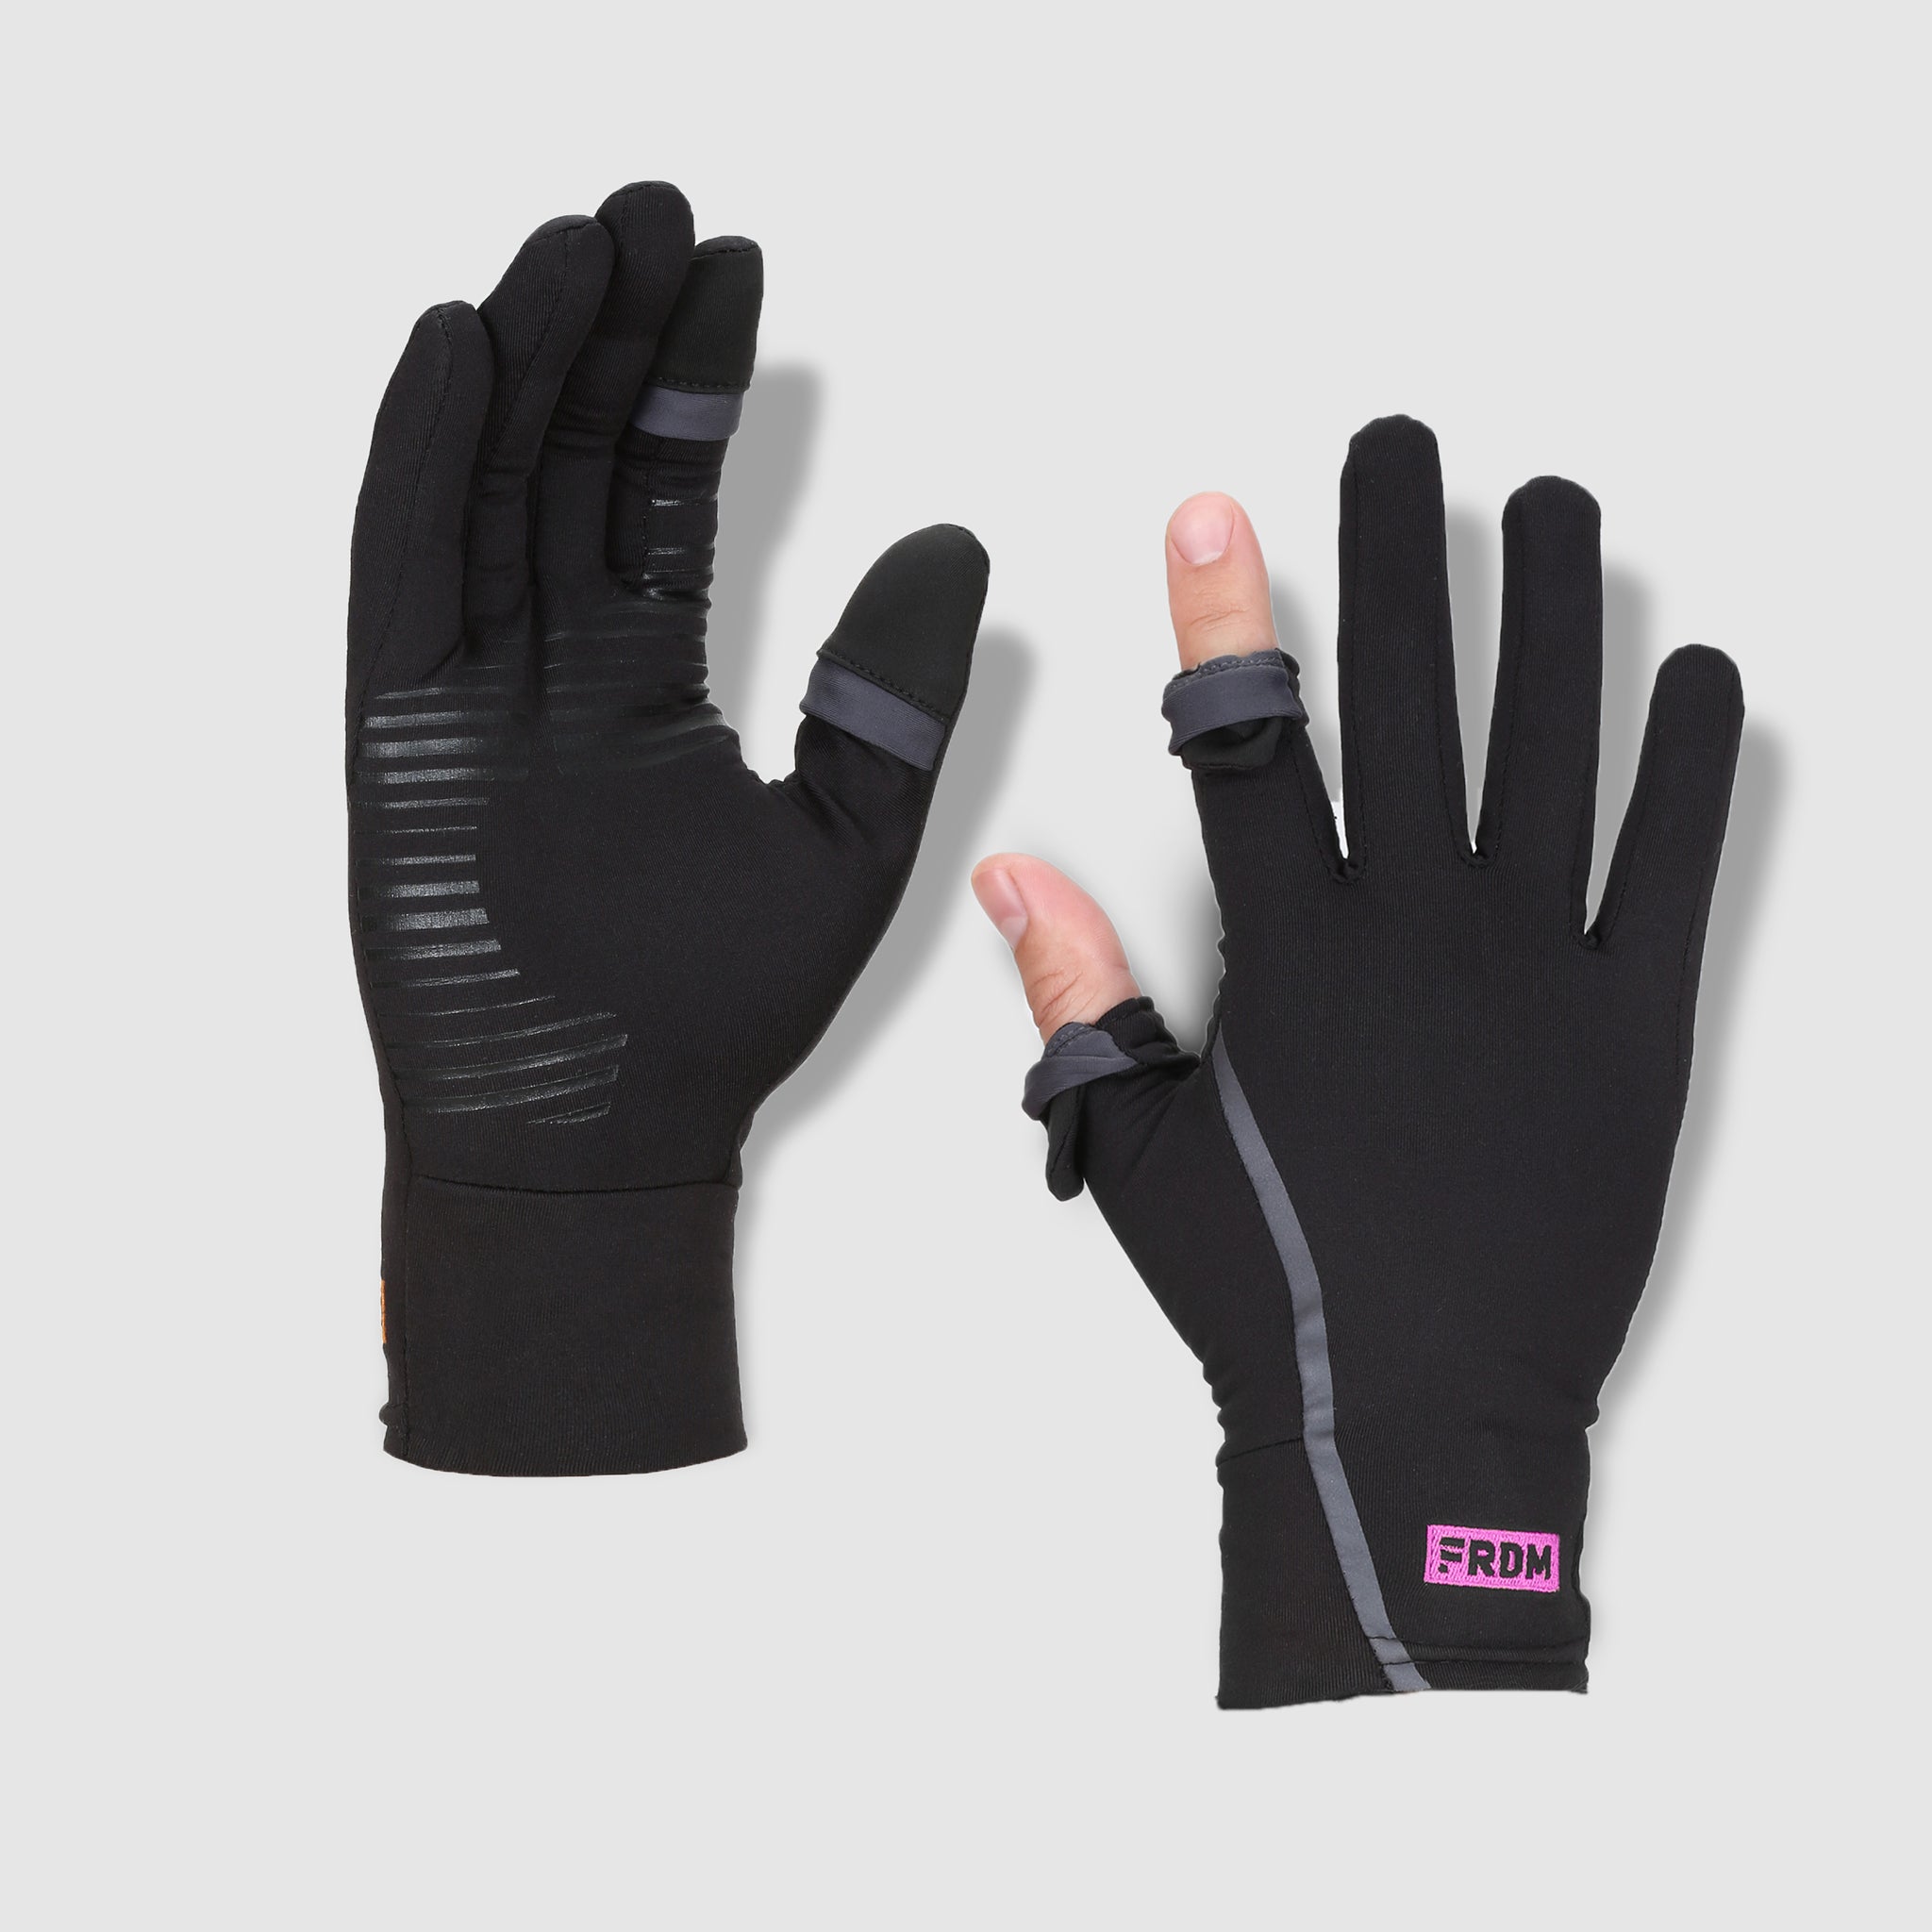 FRDM Vigor Lightweight Liner Gloves Touchscreen Hiking Running Fishing Photography Outdoor Activities, for Men & Women